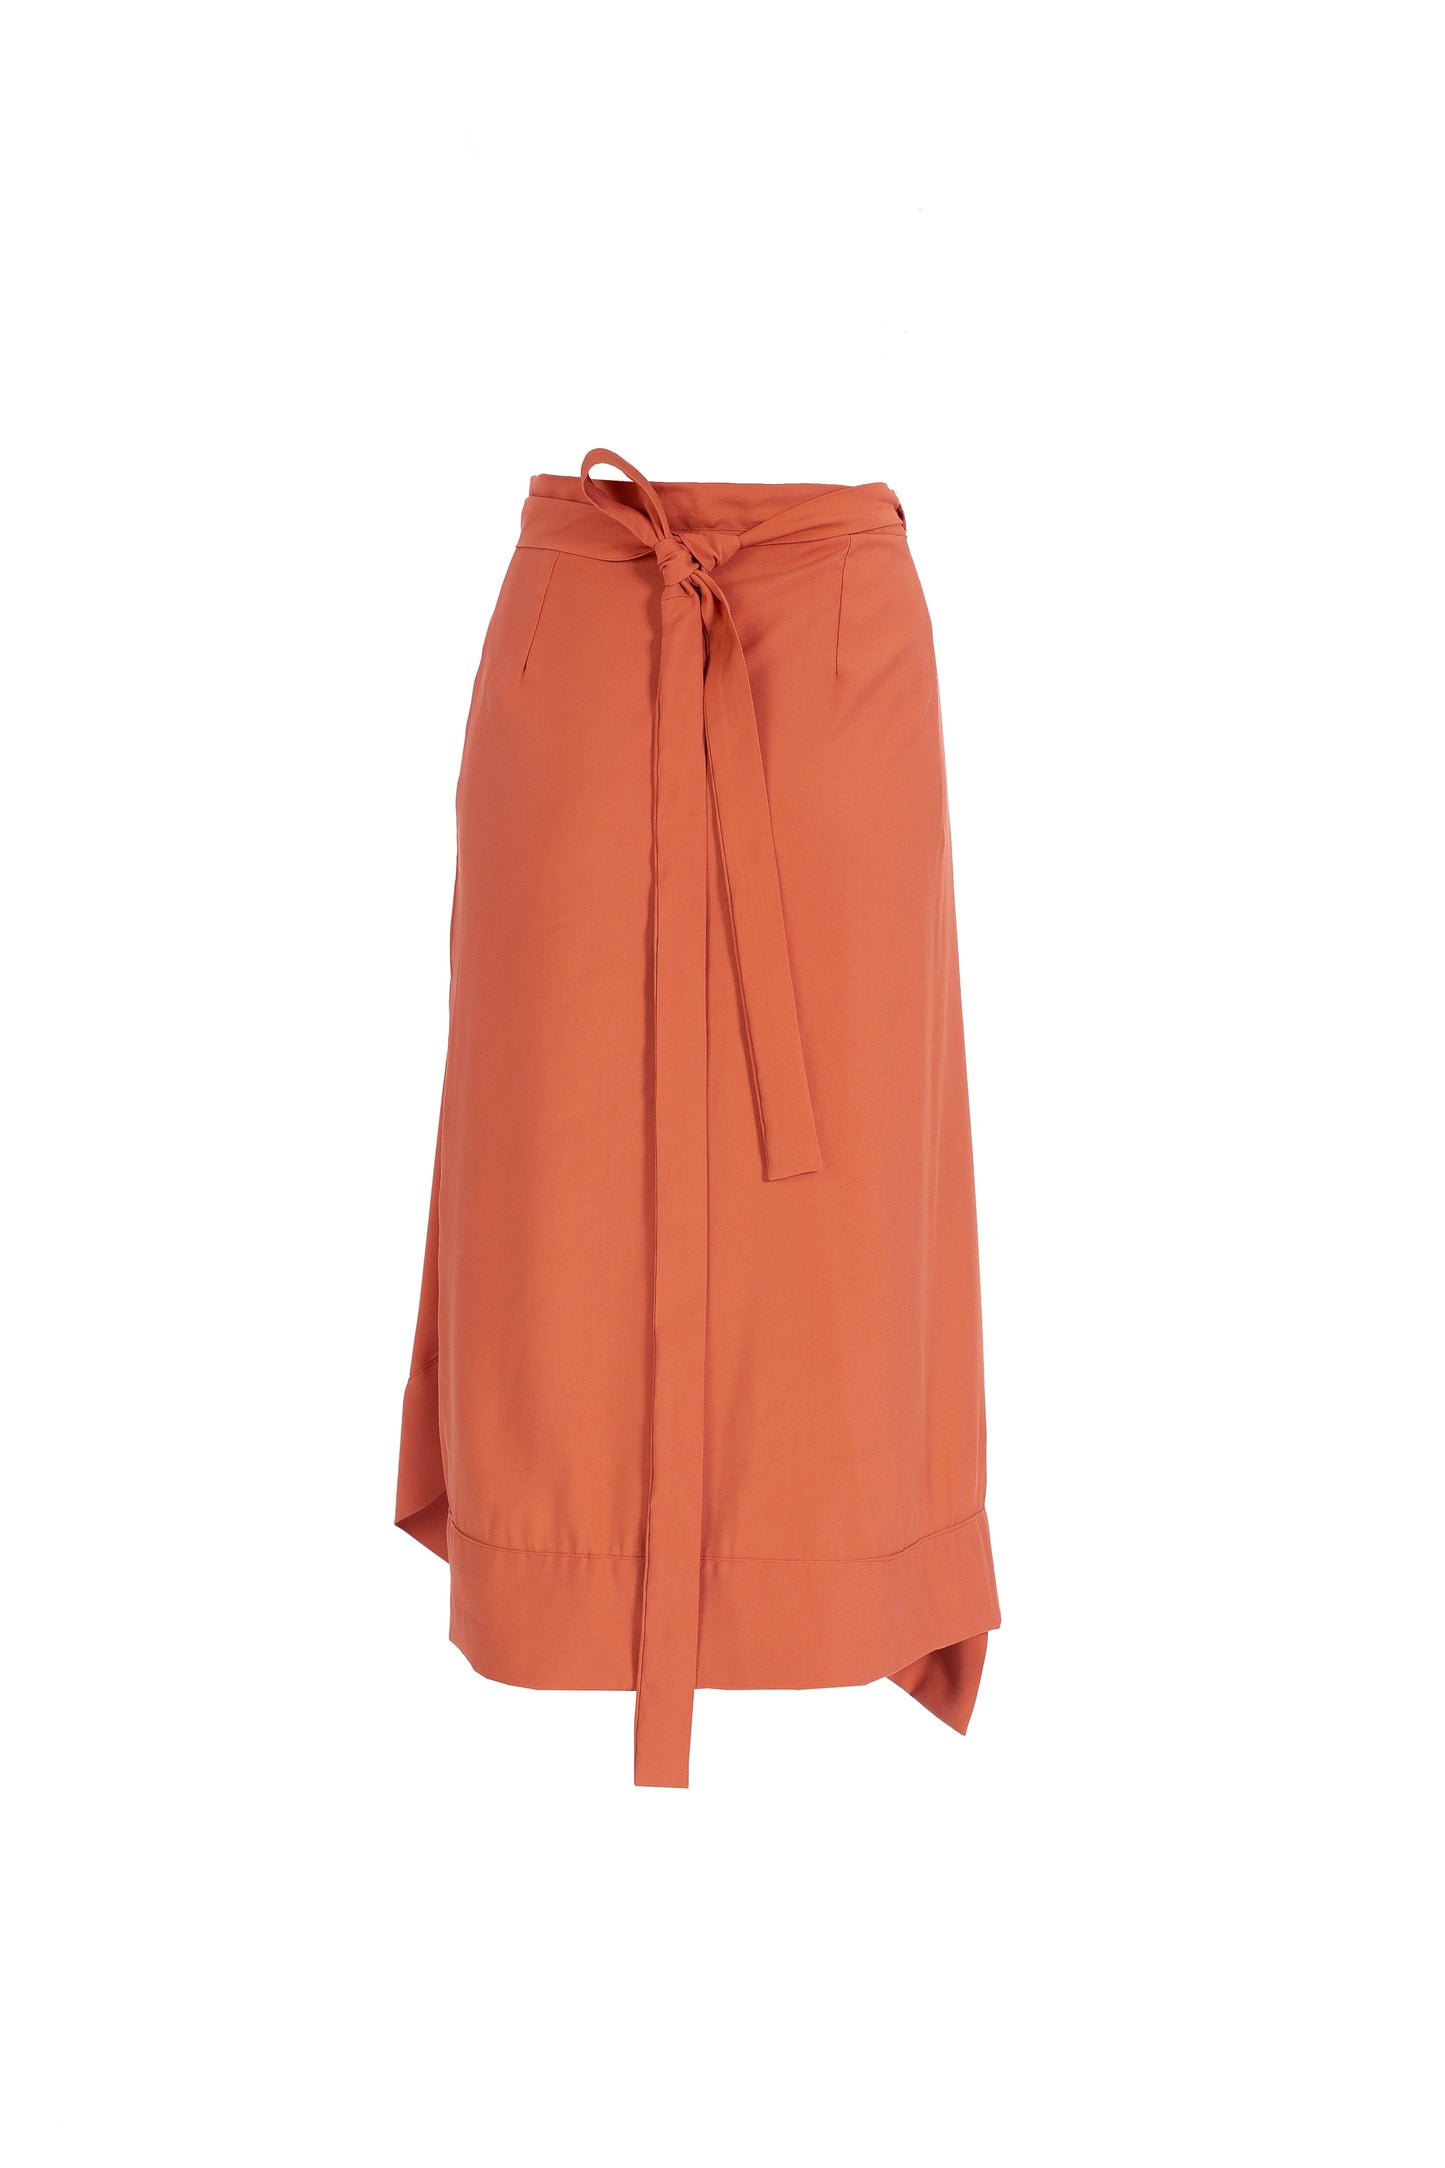 Sense | deep carrot orange skirt